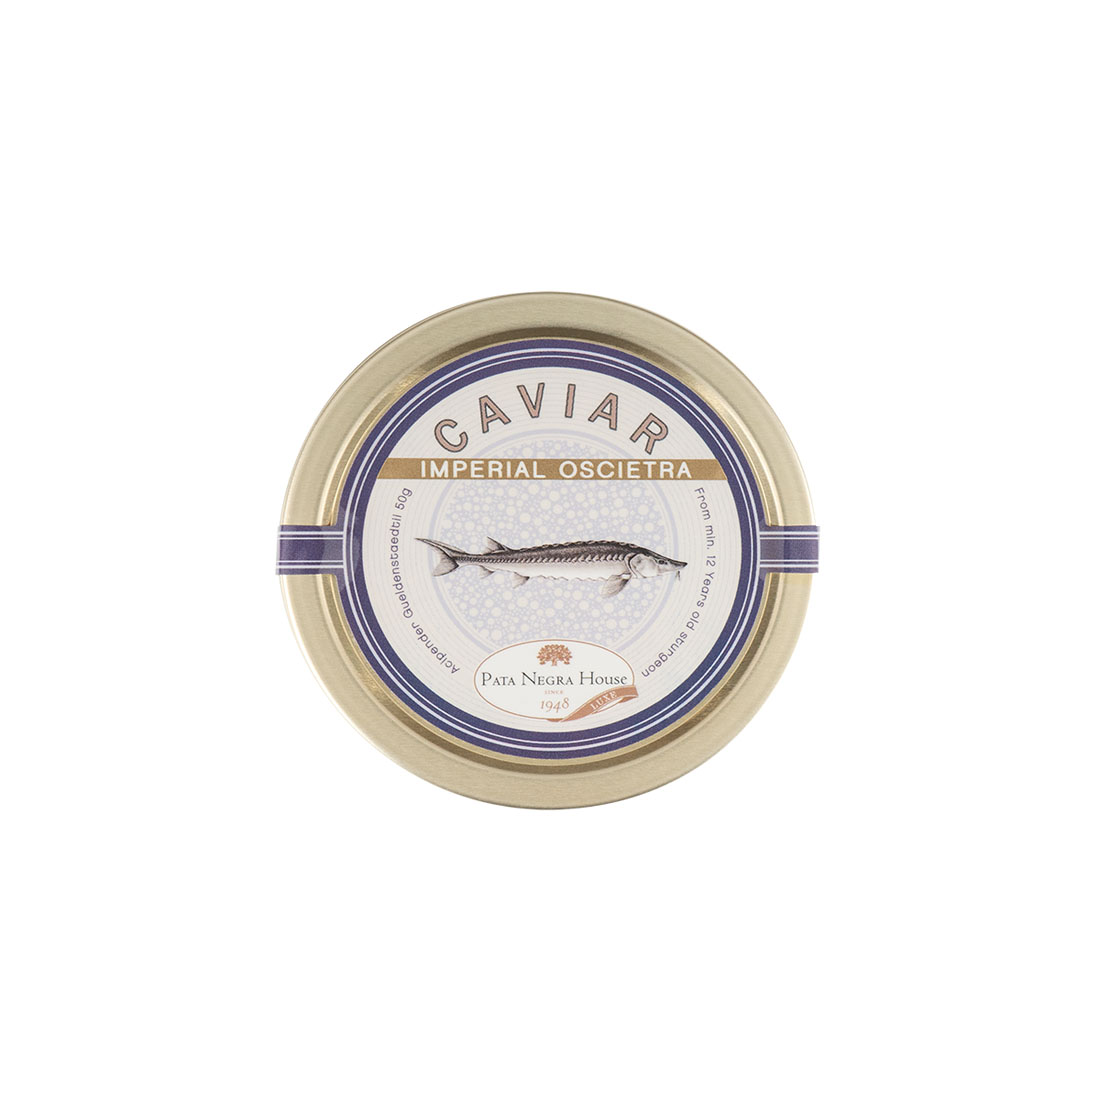 Caviar Imperial Oscietra